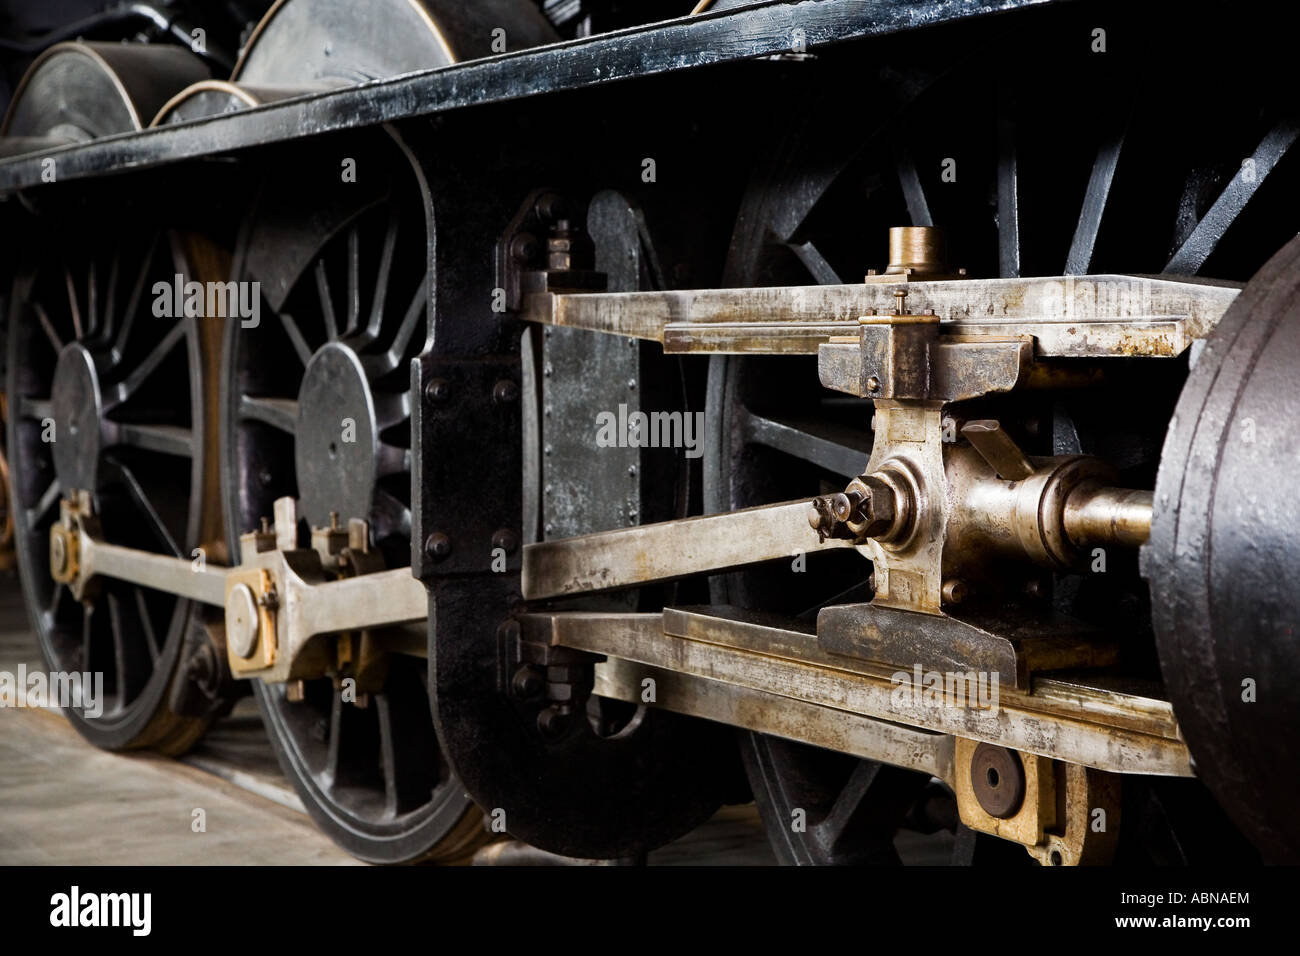 Dettaglio meccanico di una vecchia locomotiva a vapore Foto Stock